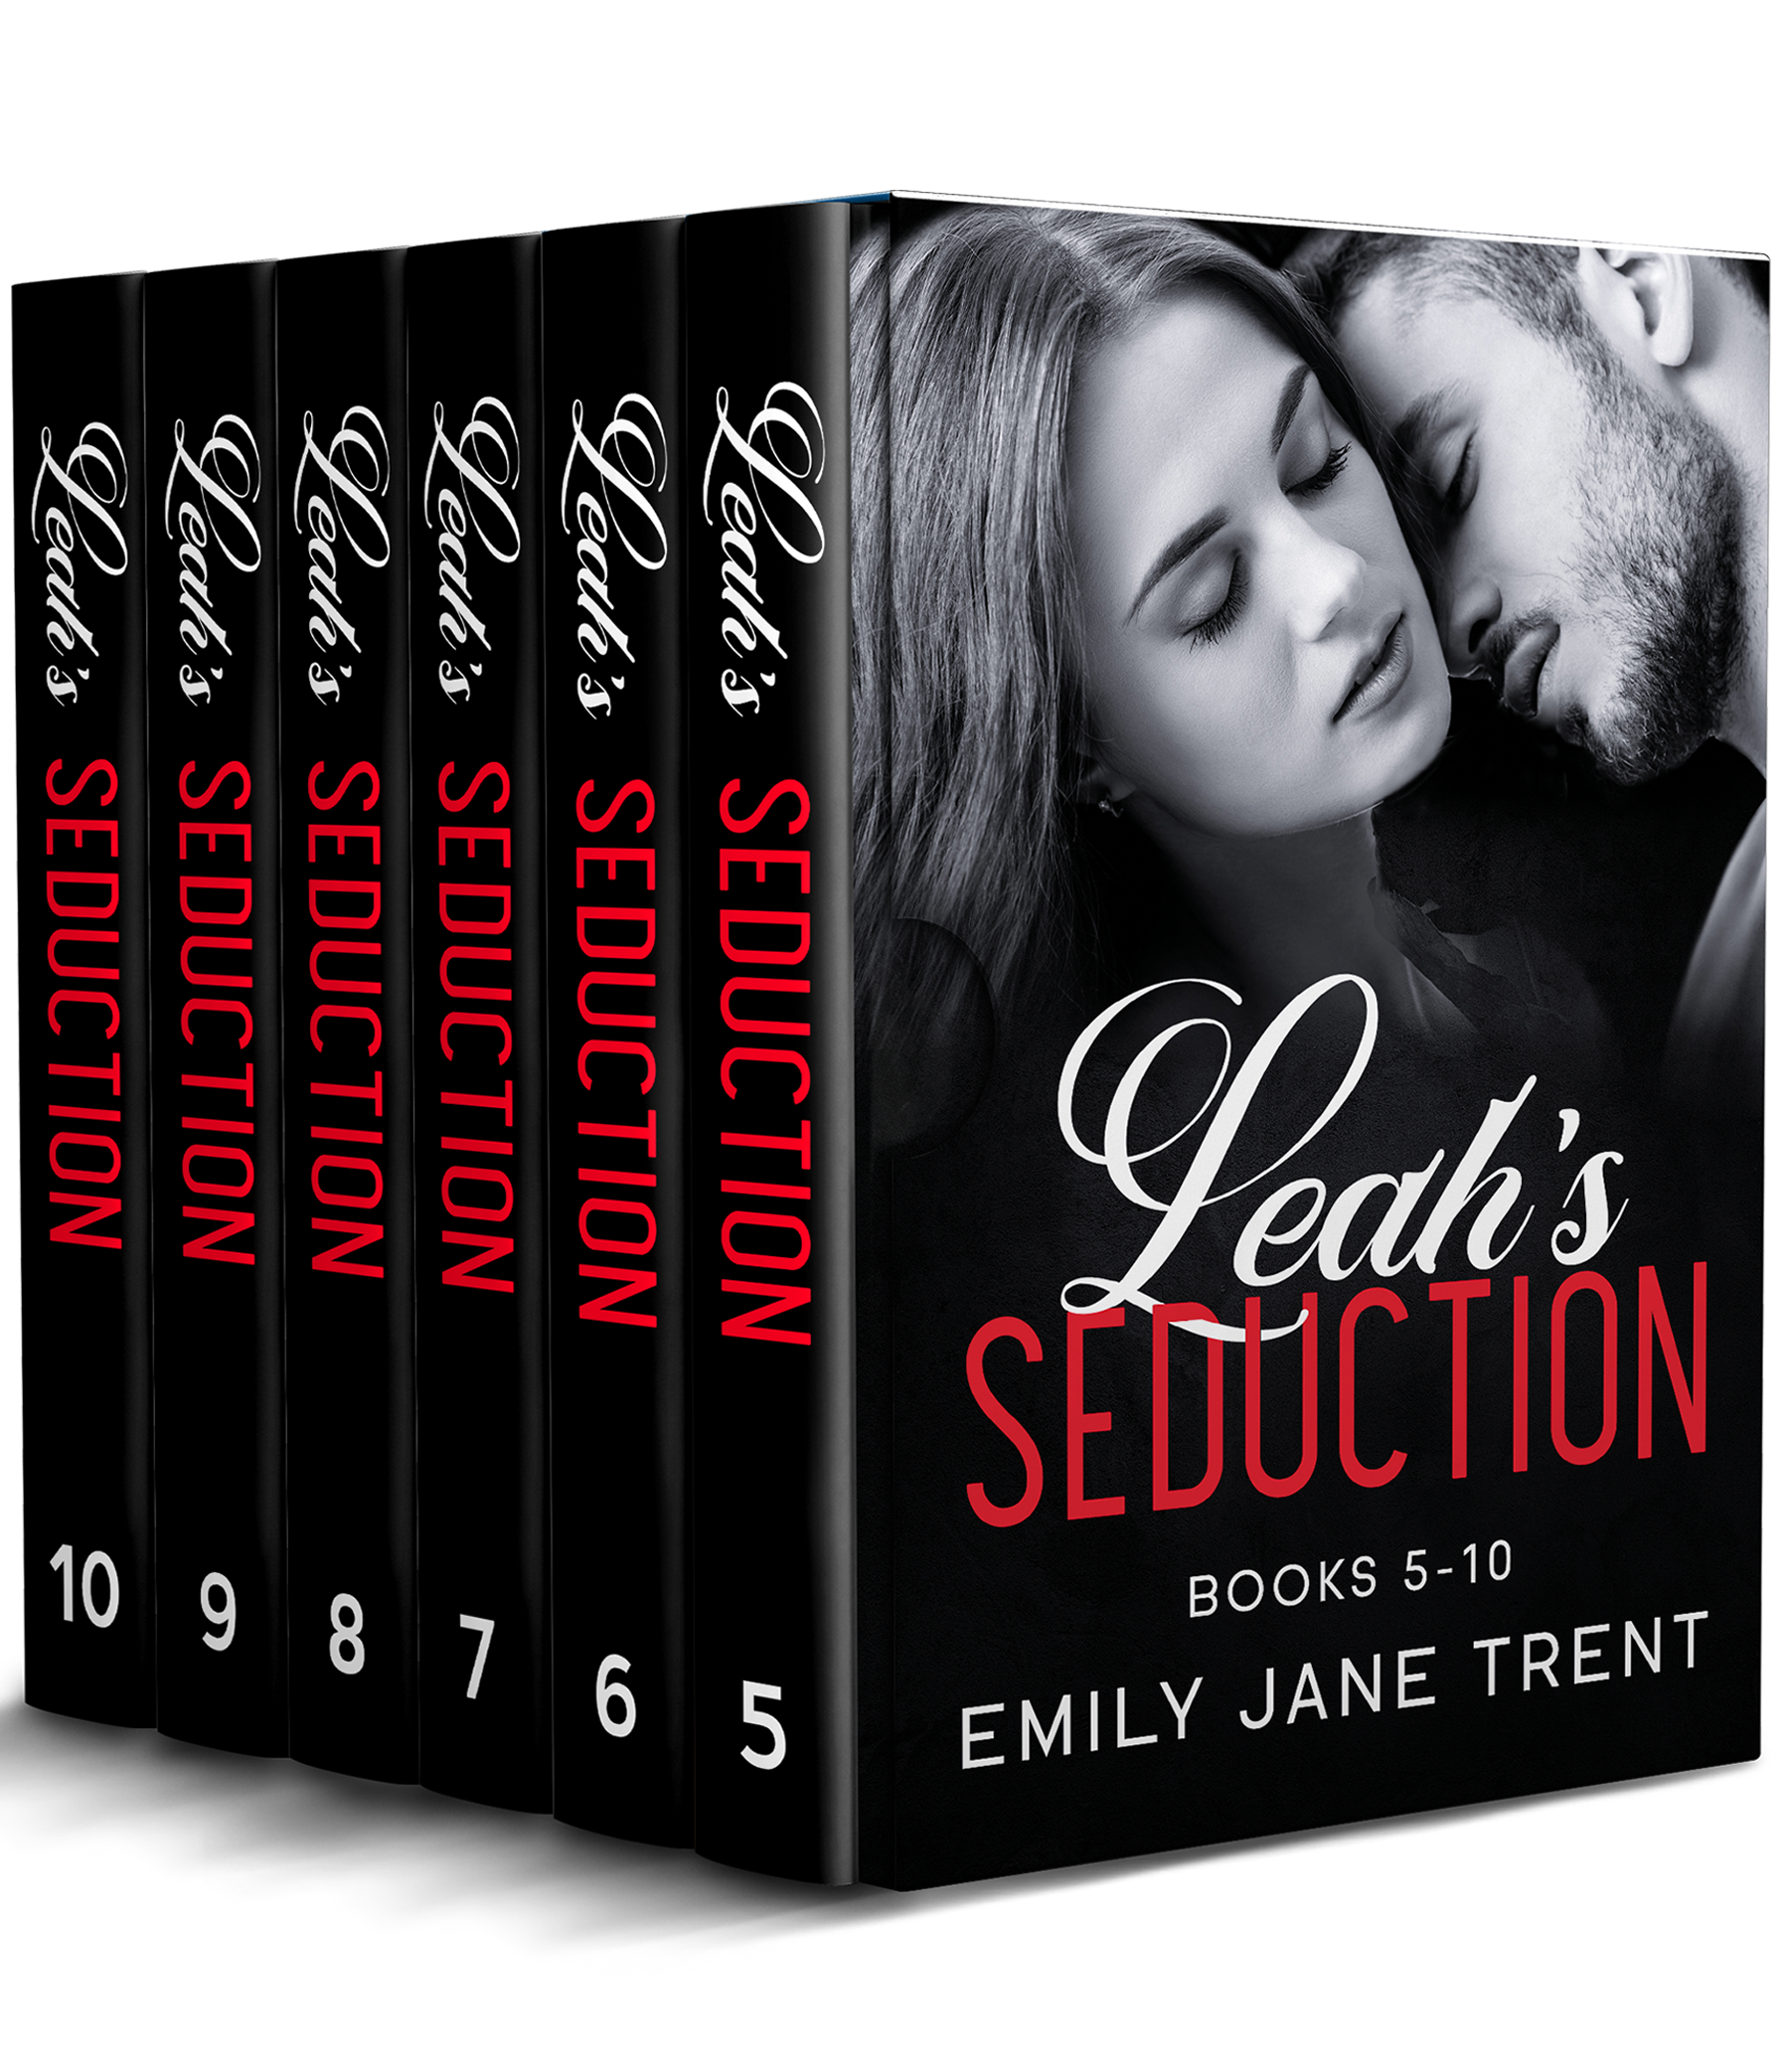 Leah's Seduction Books 5-10